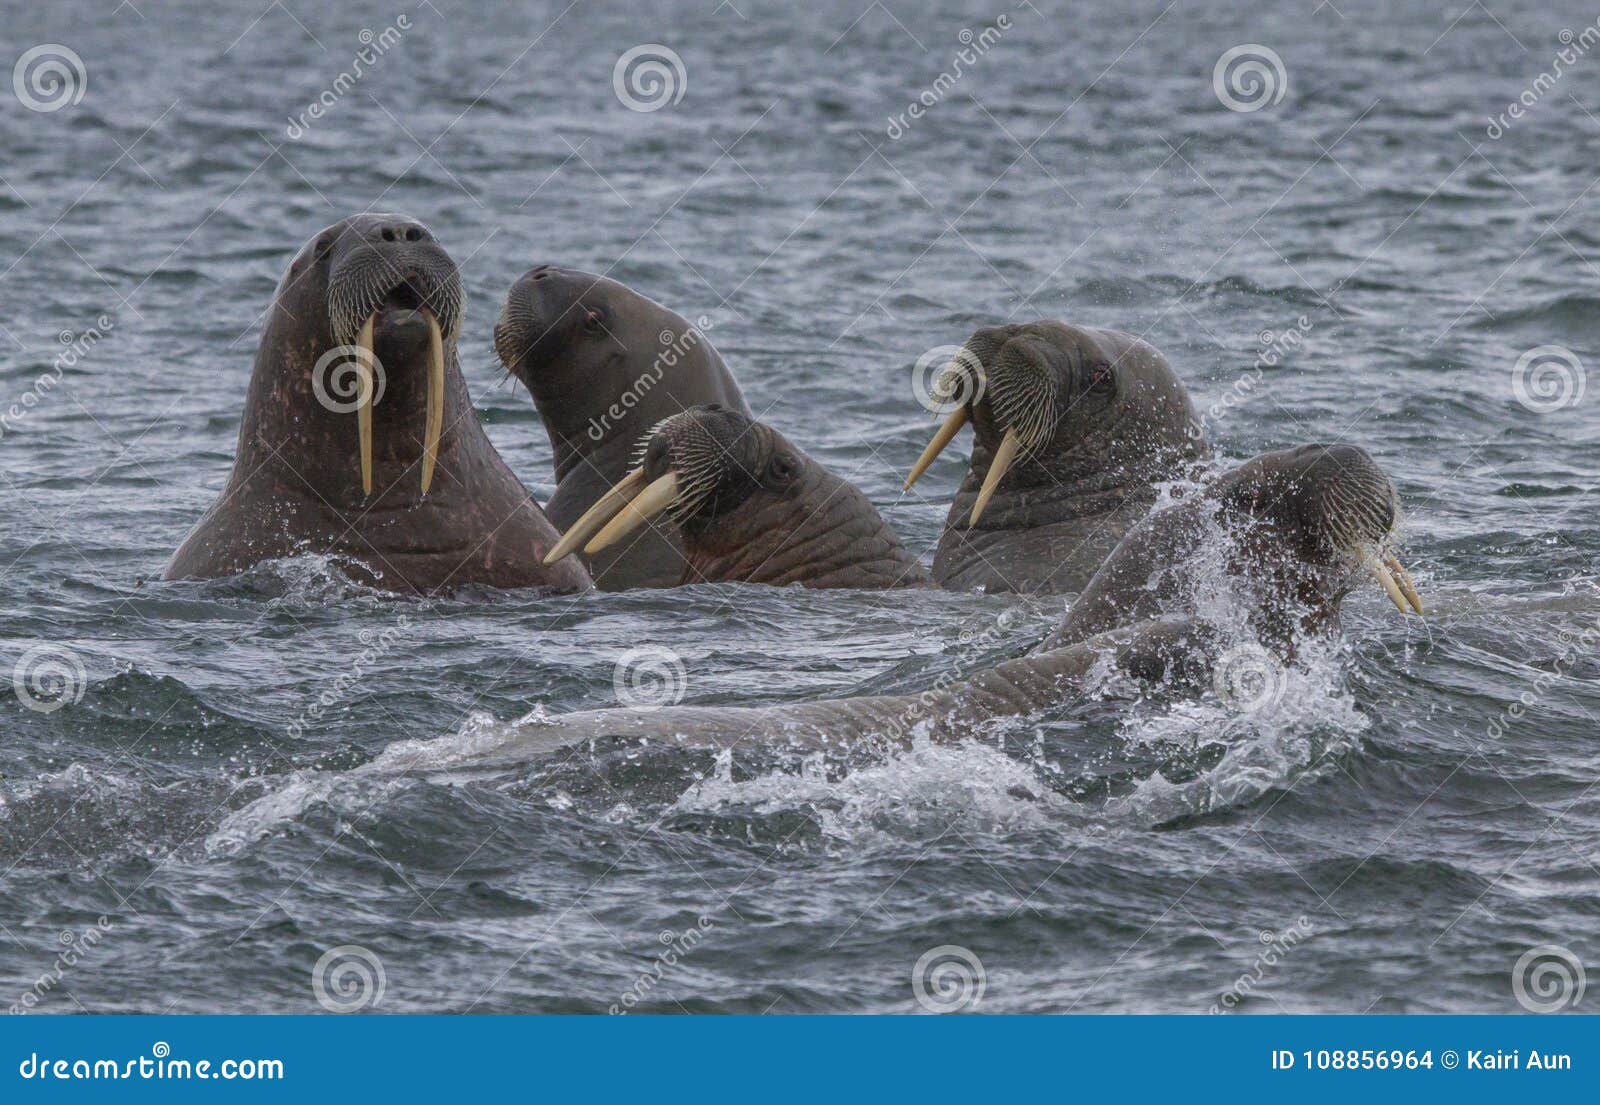 walruses in a water in svalbard